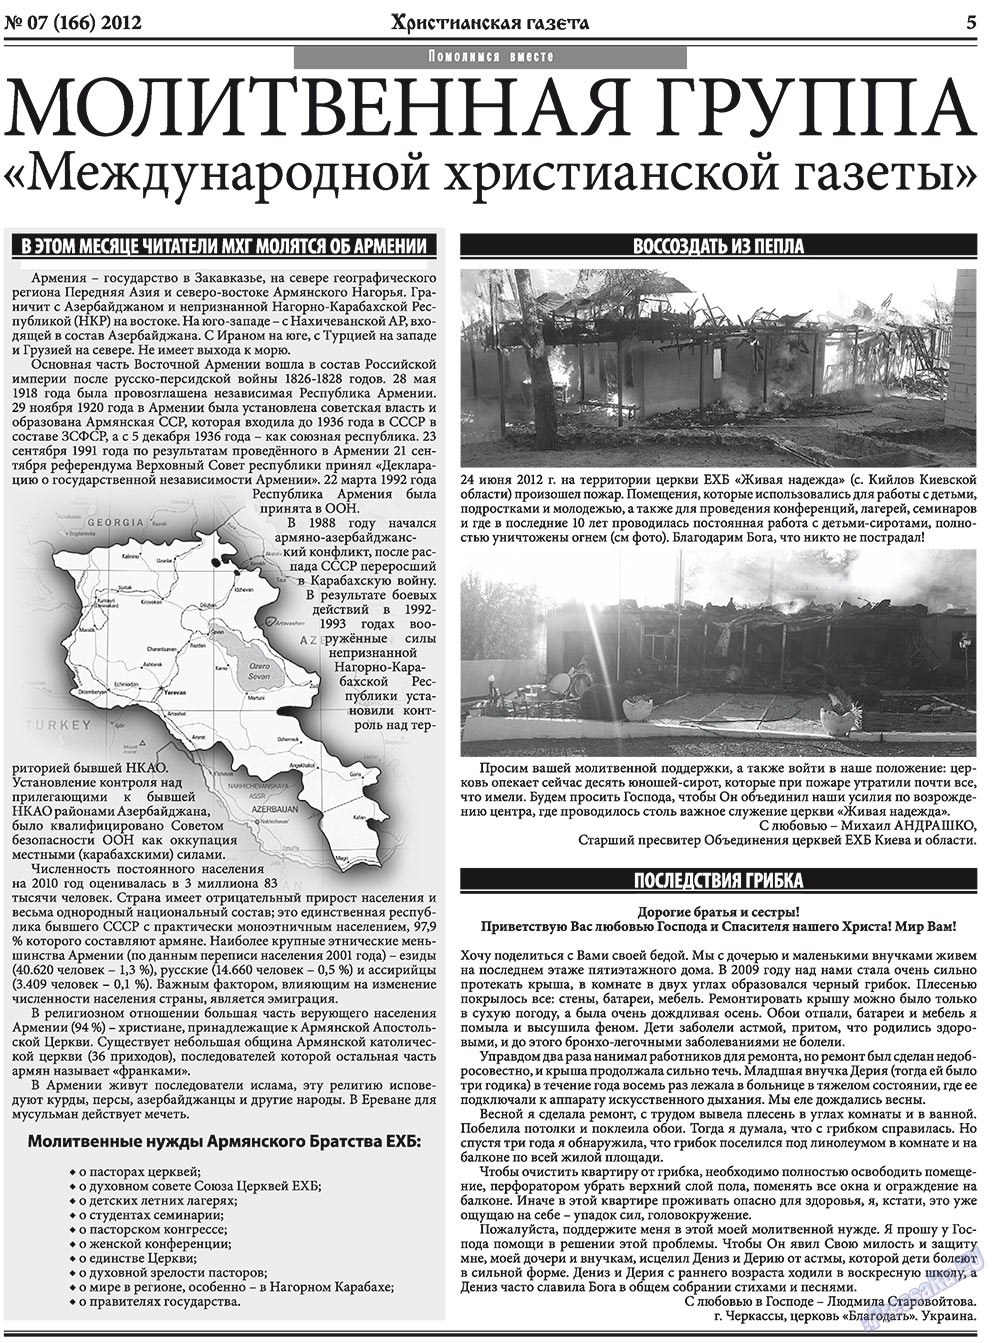 Христианская газета, газета. 2012 №7 стр.5